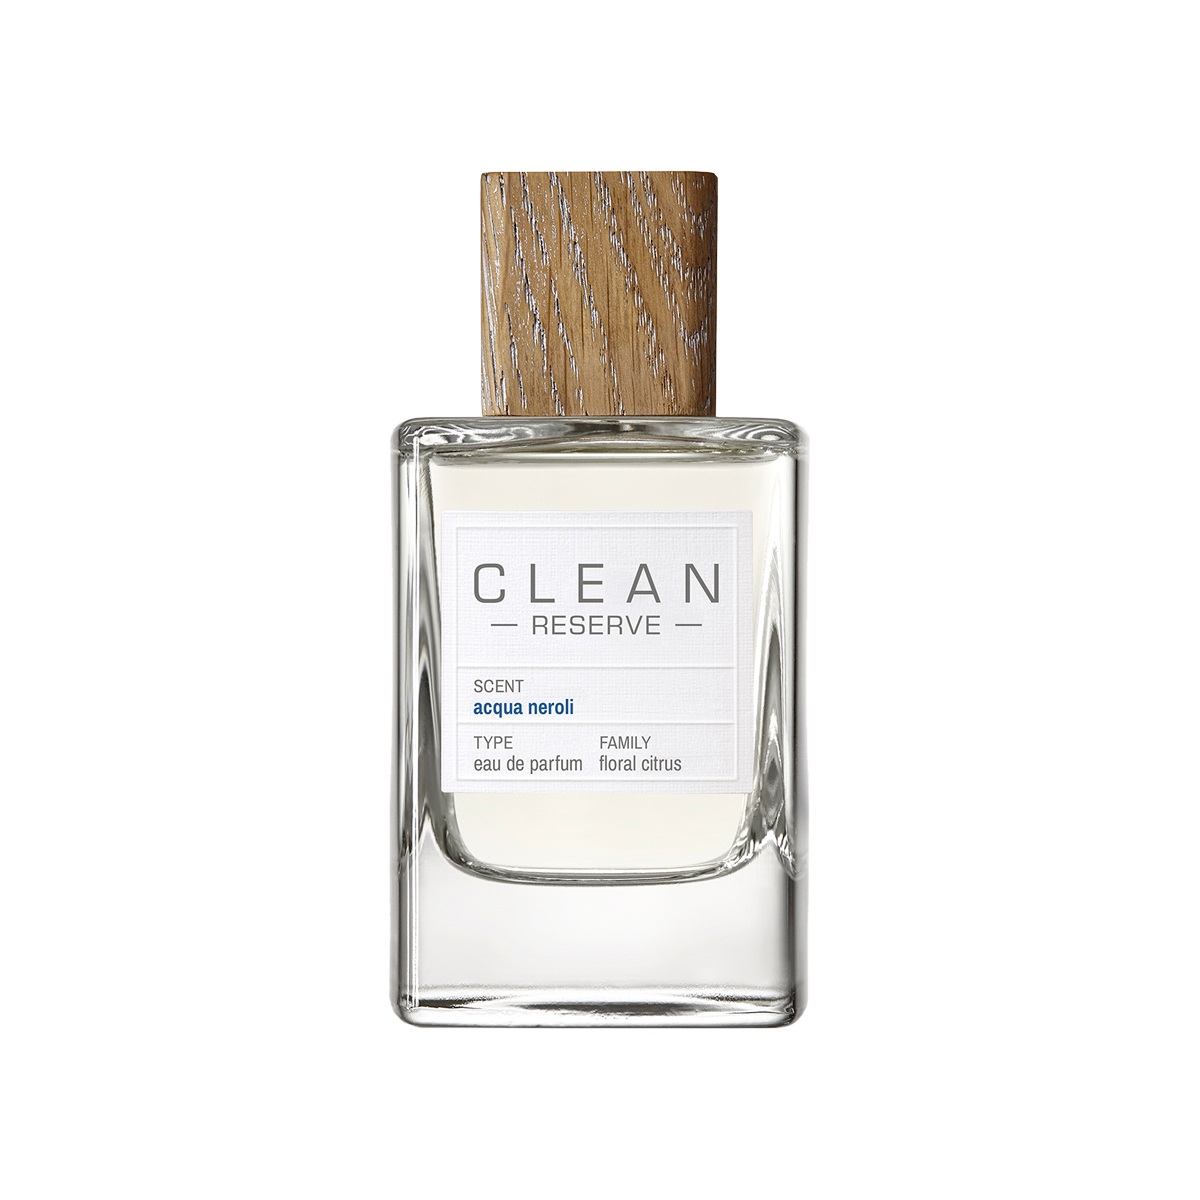 CLEAN BEAUTY - CLEAN RESERVE Acqua Neroli Eau de Parfum